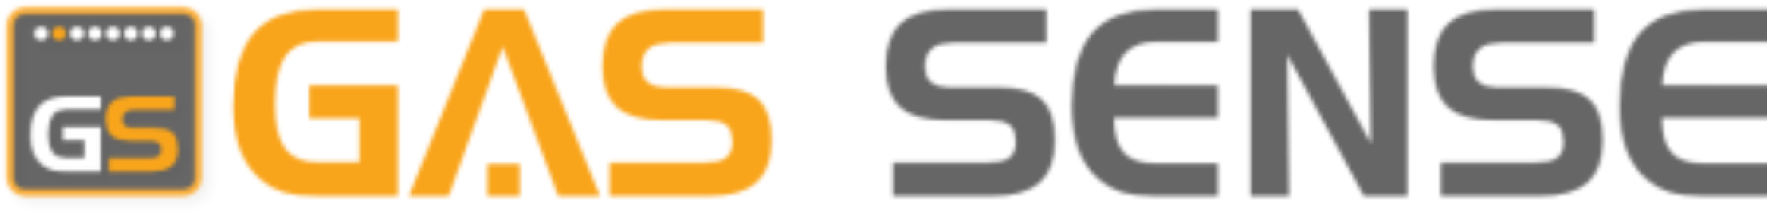 GasSense-logo